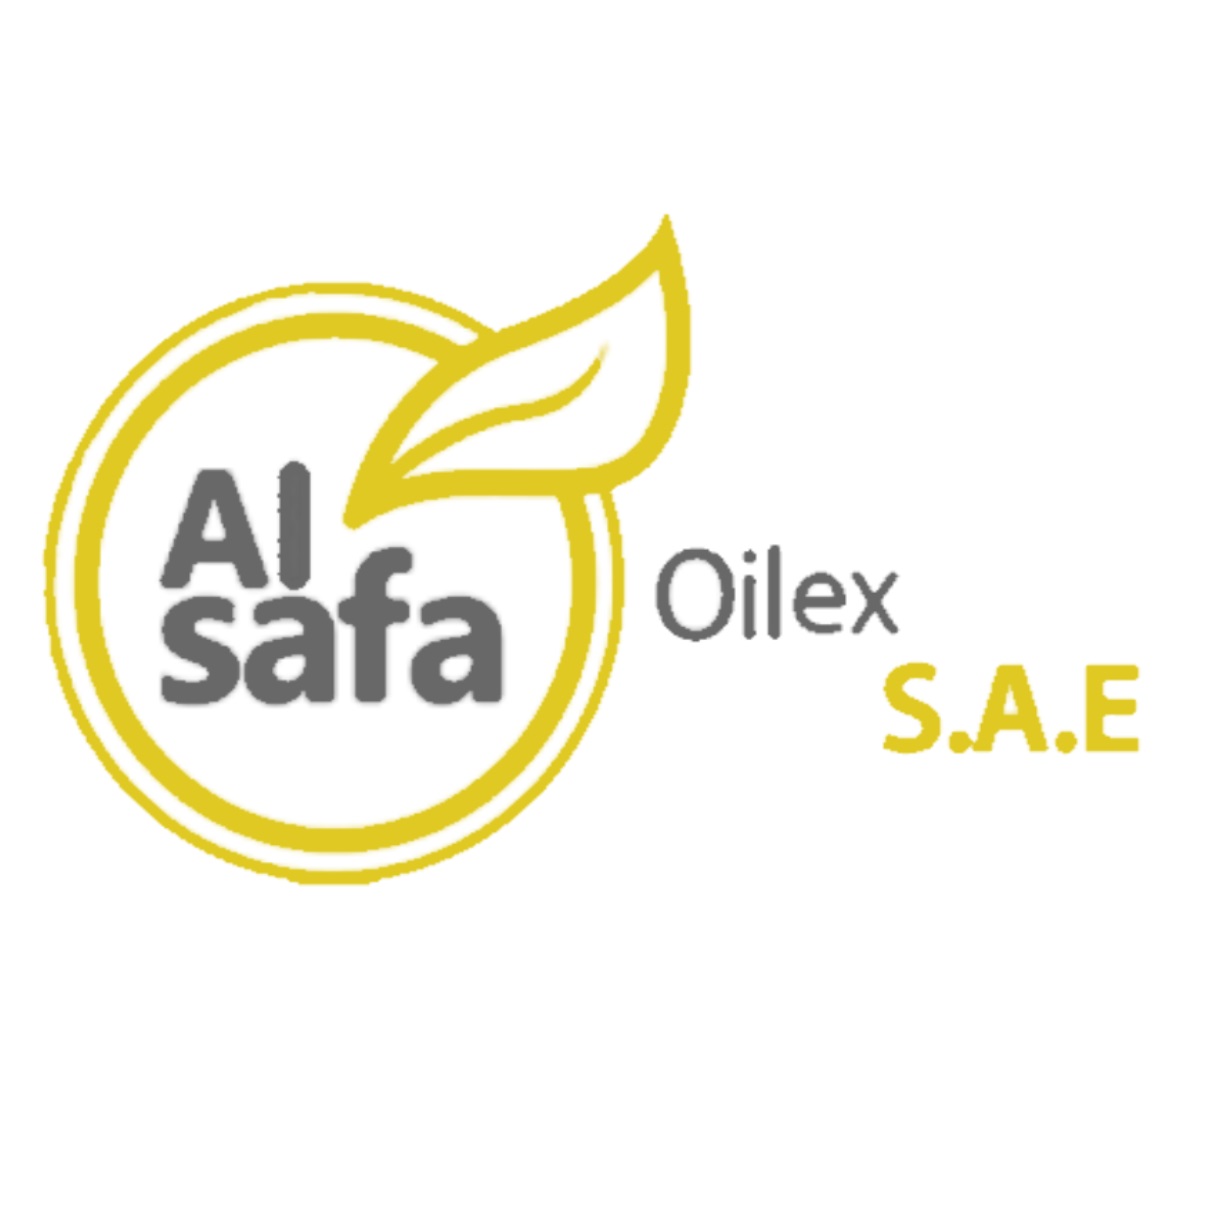 Alsafa oil